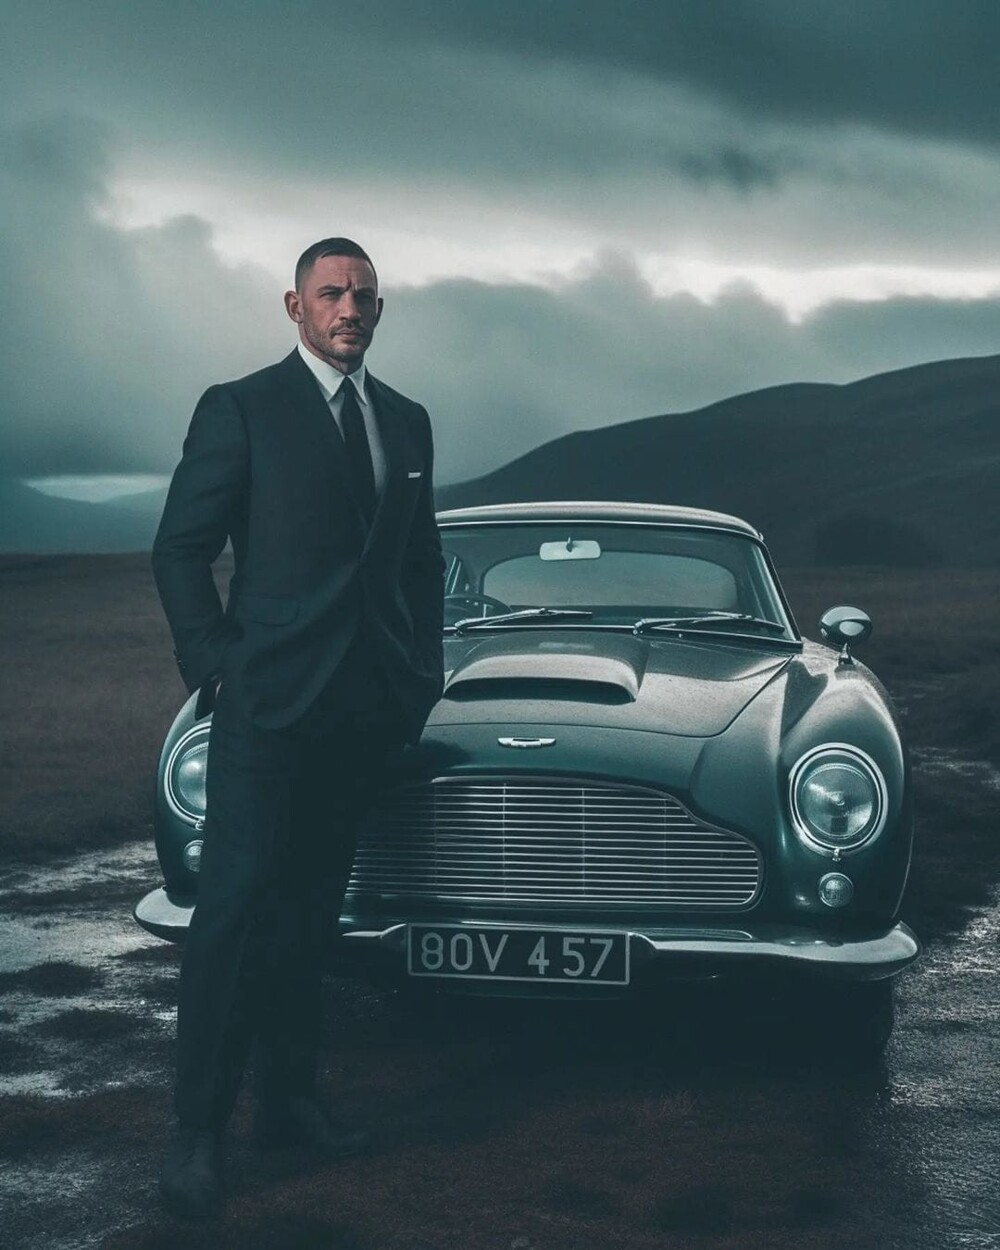 Художник показал, как 11 основных претендентов на роль нового Джеймса Бонда выглядели бы в образе агента 007